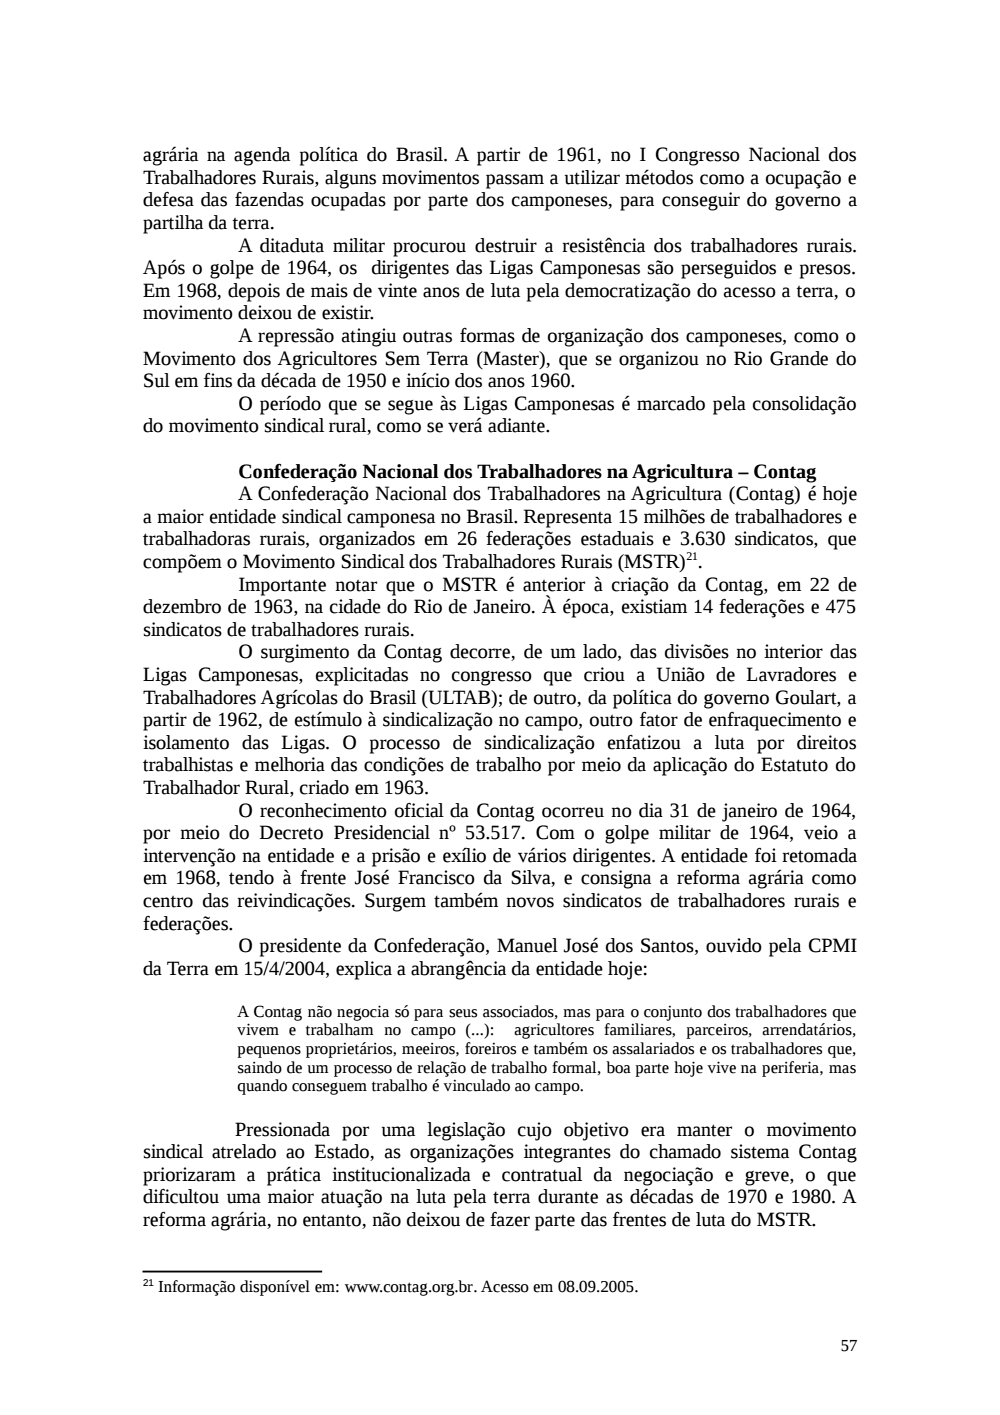 Page 57 from Relatório final da comissão